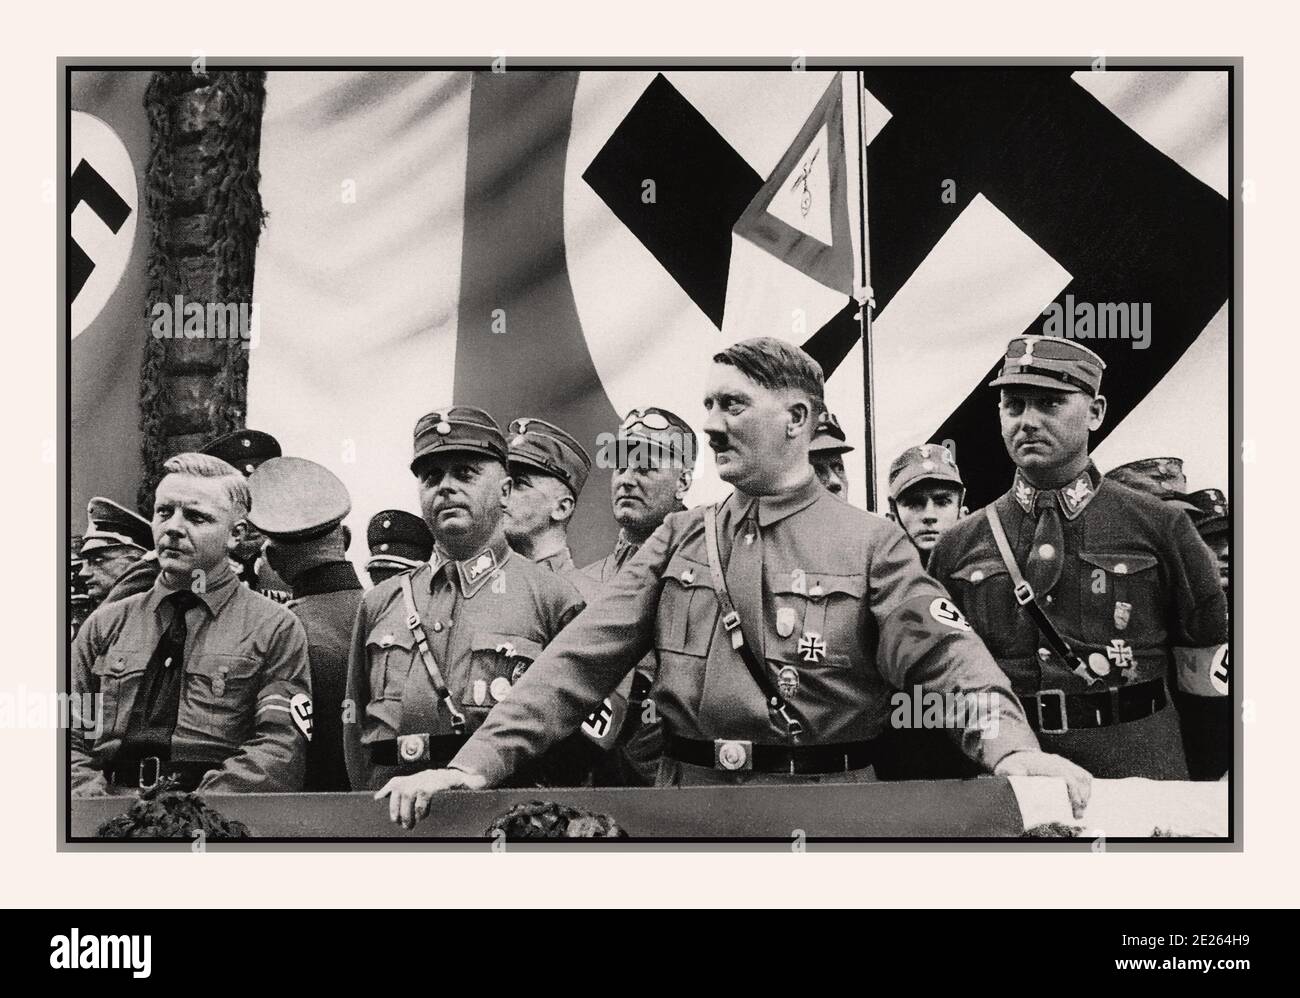 Archiv 1930er Jahre Adolf Hitler in Uniform mit Hakenkreuzarmband bei einer politischen Kundgebung. Mit NSDAP-Mitgliedern 1930er Jahre, Dortmund, Deutschland mit großer Hakenkreuzflagge als Hintergrund Stockfoto